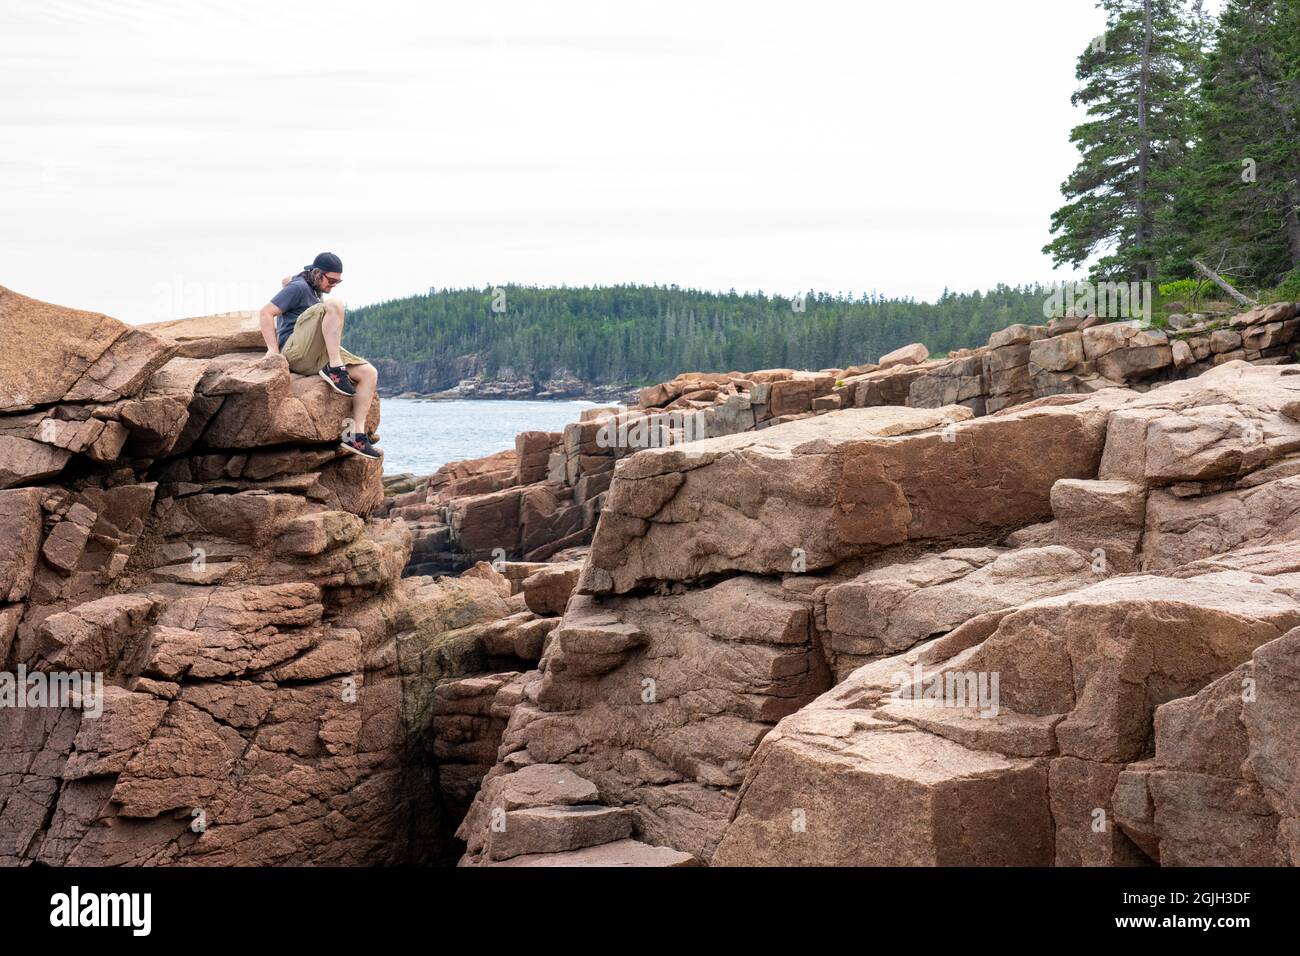 Parc national Acadia, Maine, États-Unis. Homme grimpant prudemment sur la falaise près de Thunder Hole. Banque D'Images